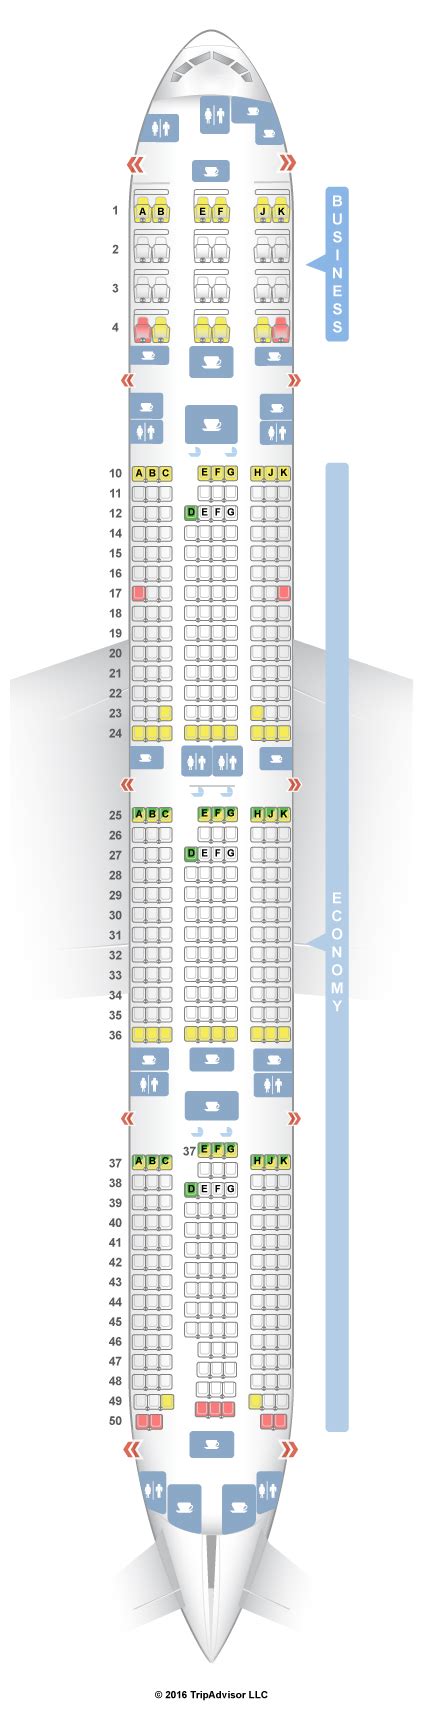 boeing 777-300er qatar airways seat map